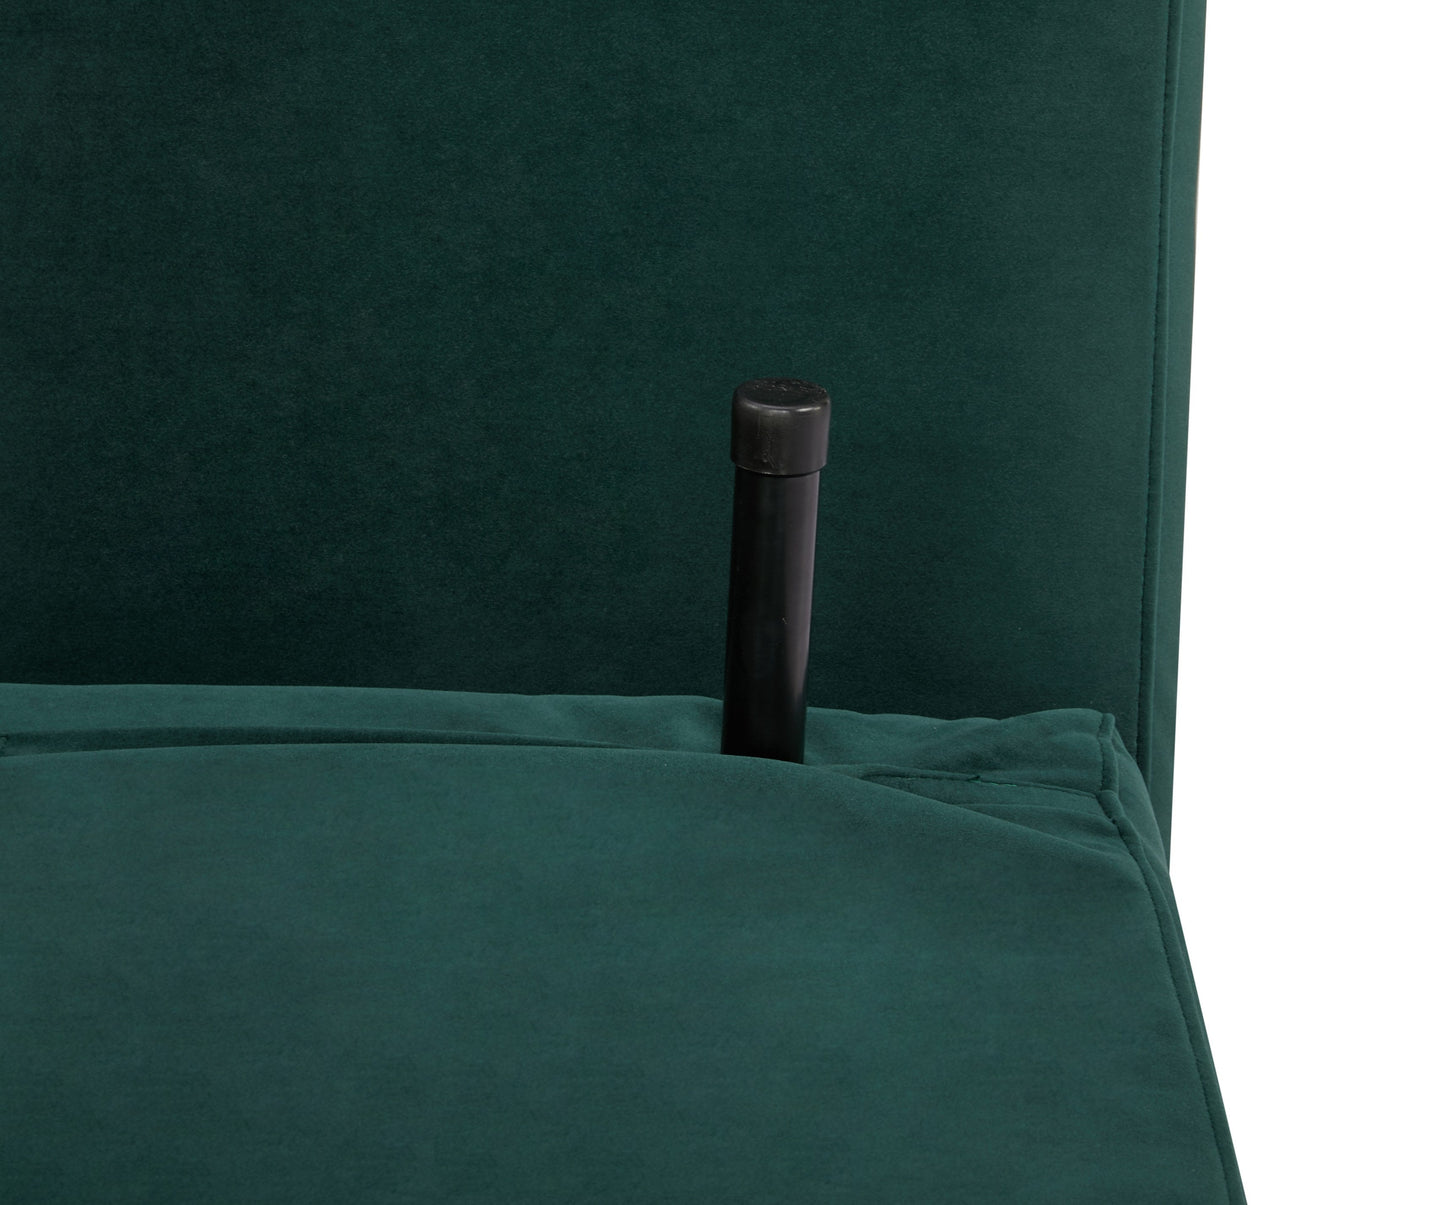 Convertible Accent Chair, Green Velvet